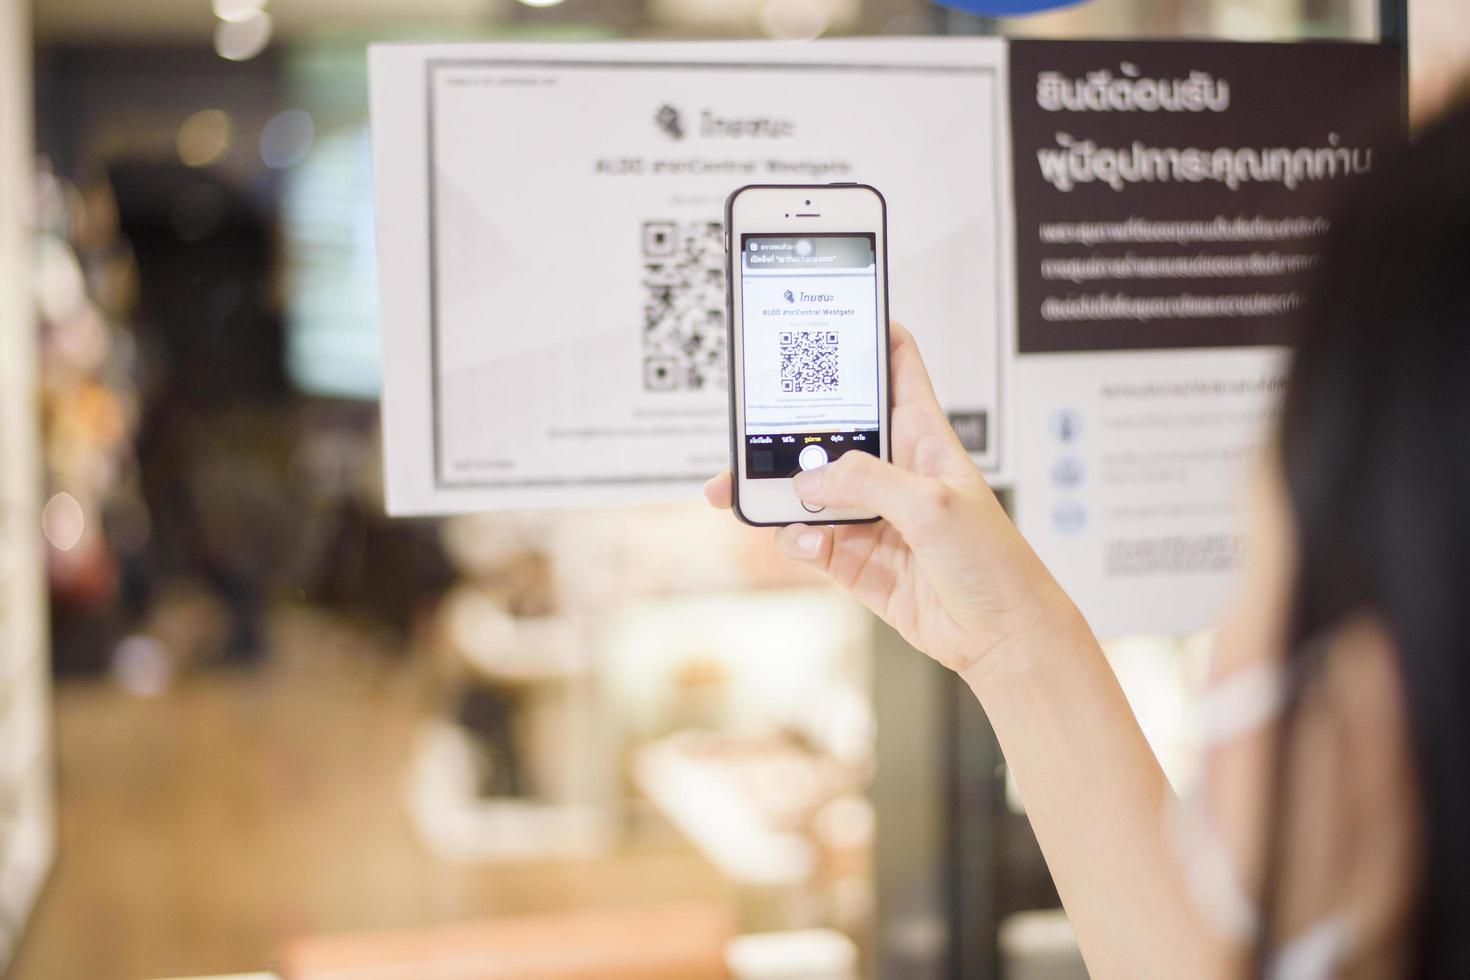 bangkok, tailandia - 17 luglio 2020 della mano della gente sta tenendo lo smartphone con la campagna thaichana della tailandia per la prevenzione del covid-19 nel centro commerciale foto